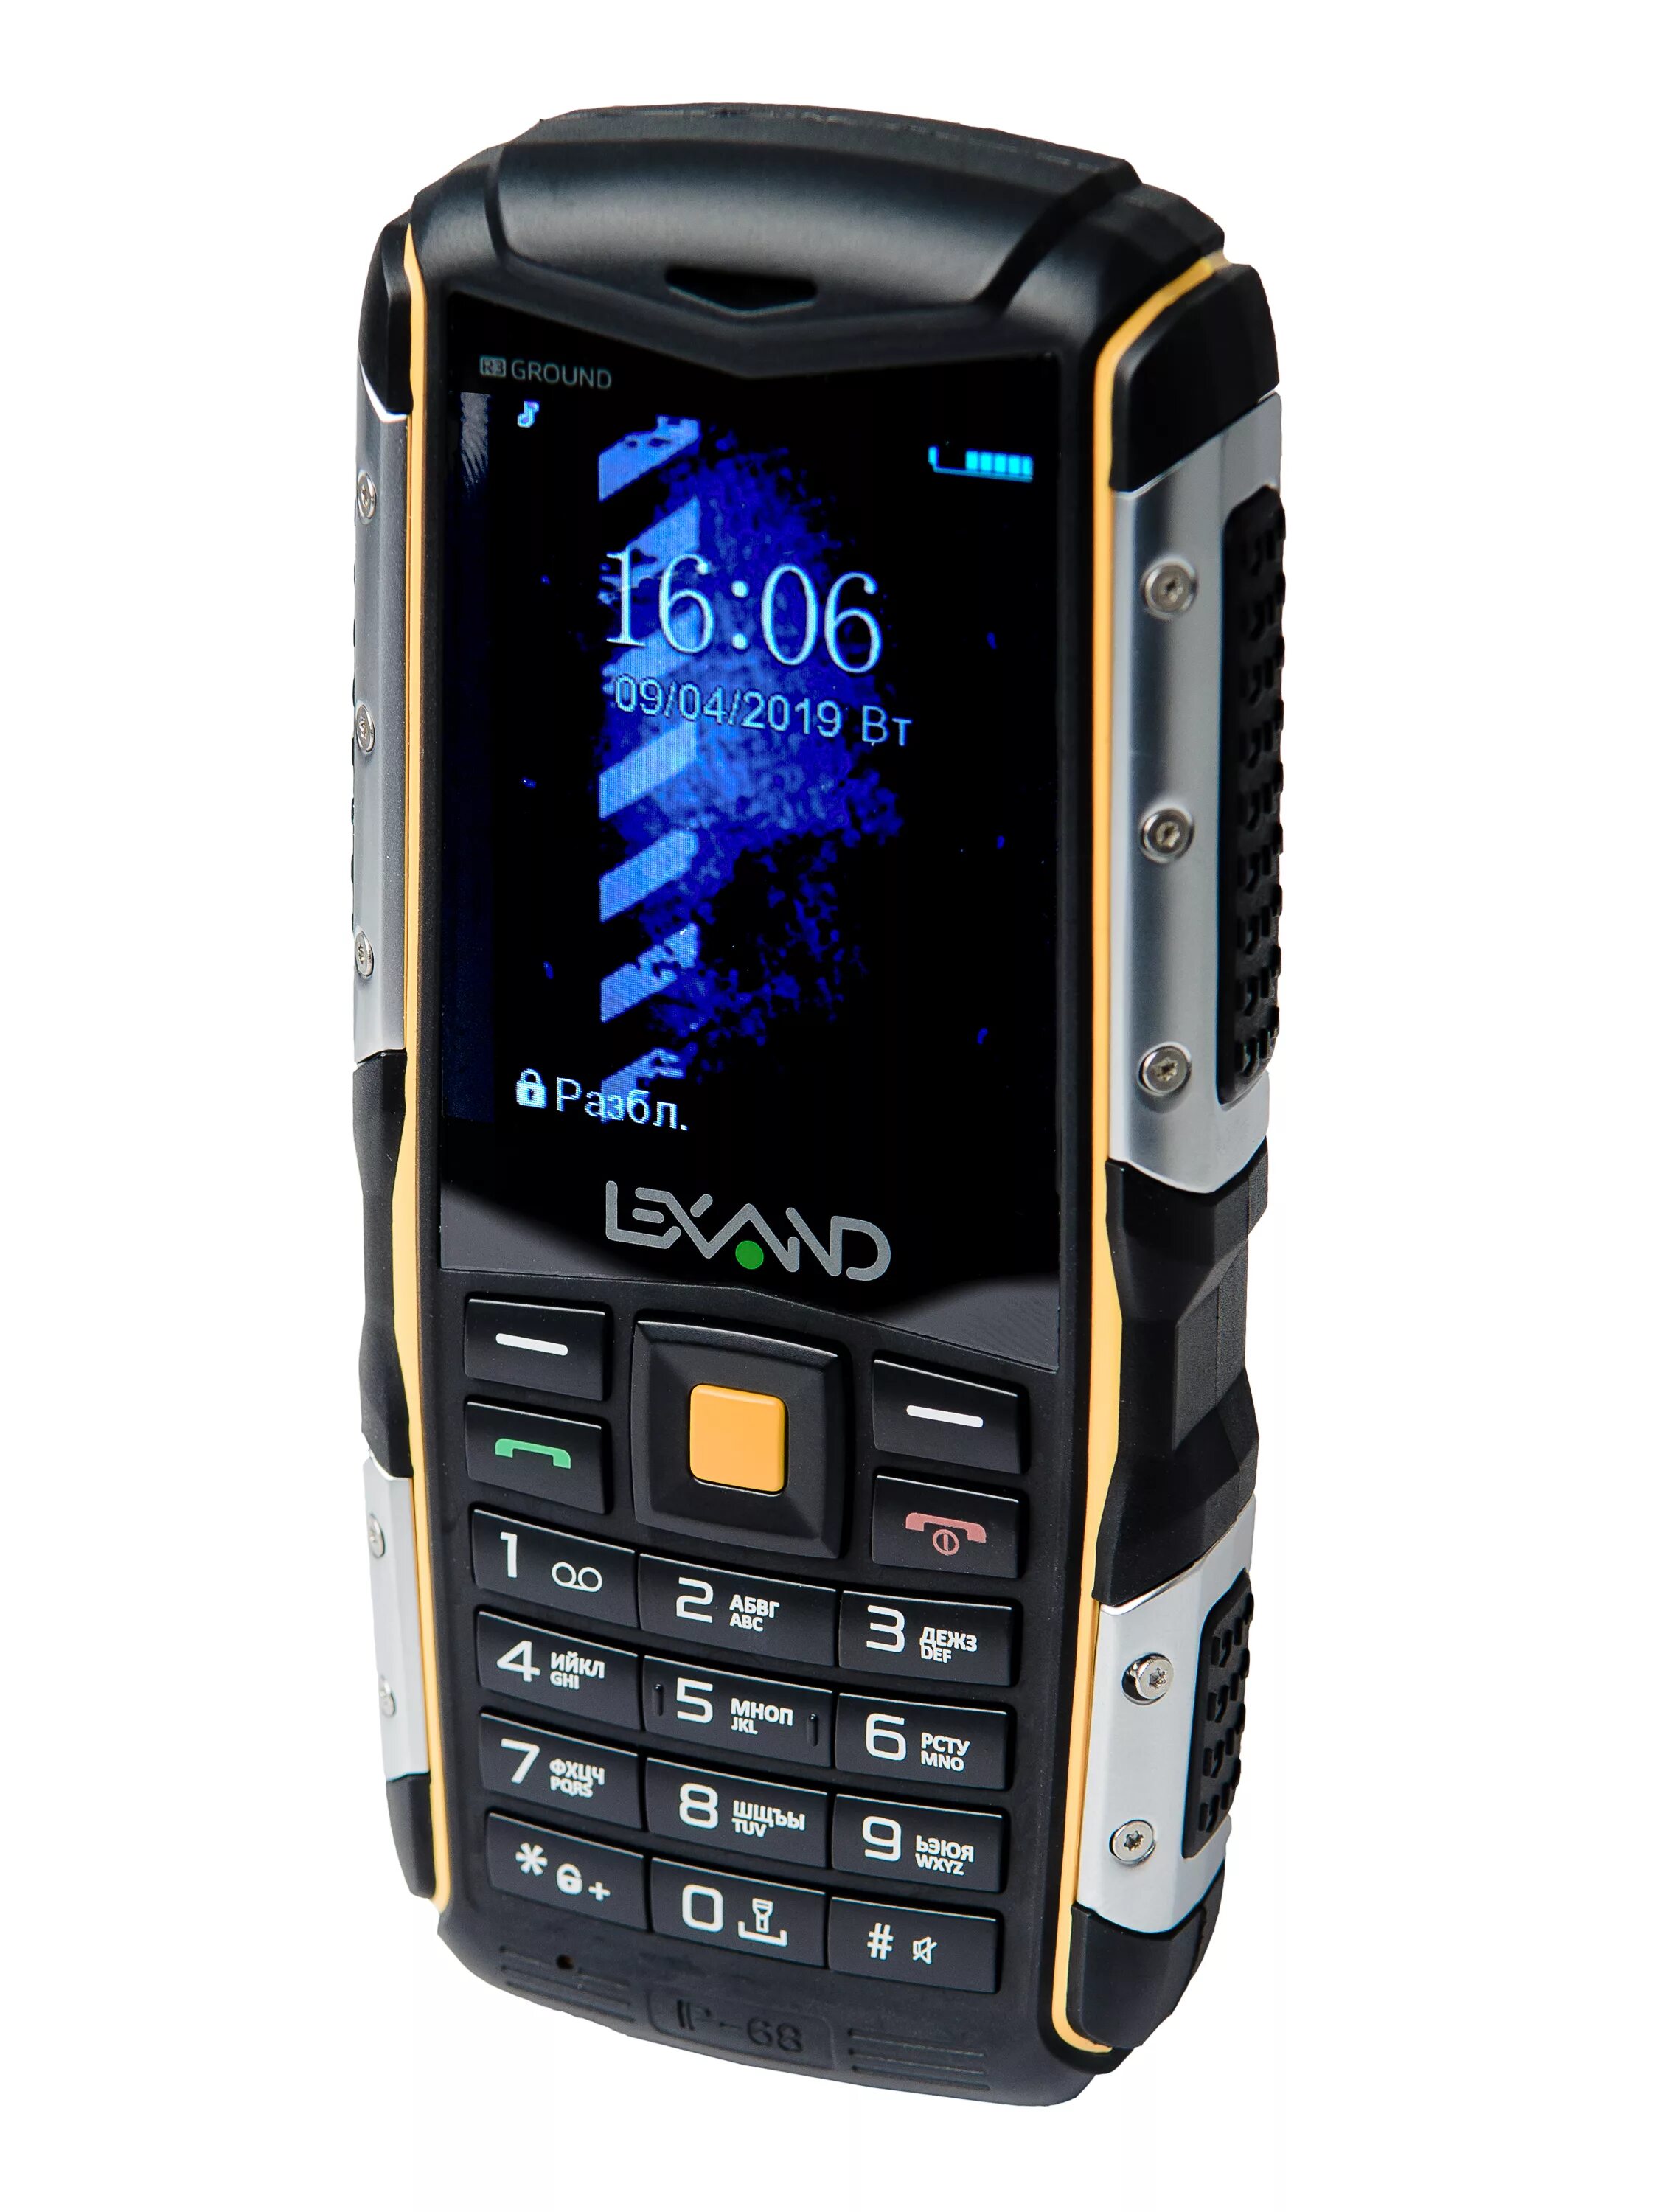 Lexand r3 ground. Lexand r3 ground аккумулятор. Кнопочный телефон. Сотовый телефон кнопочный. Купить мобильные недорогие в москве